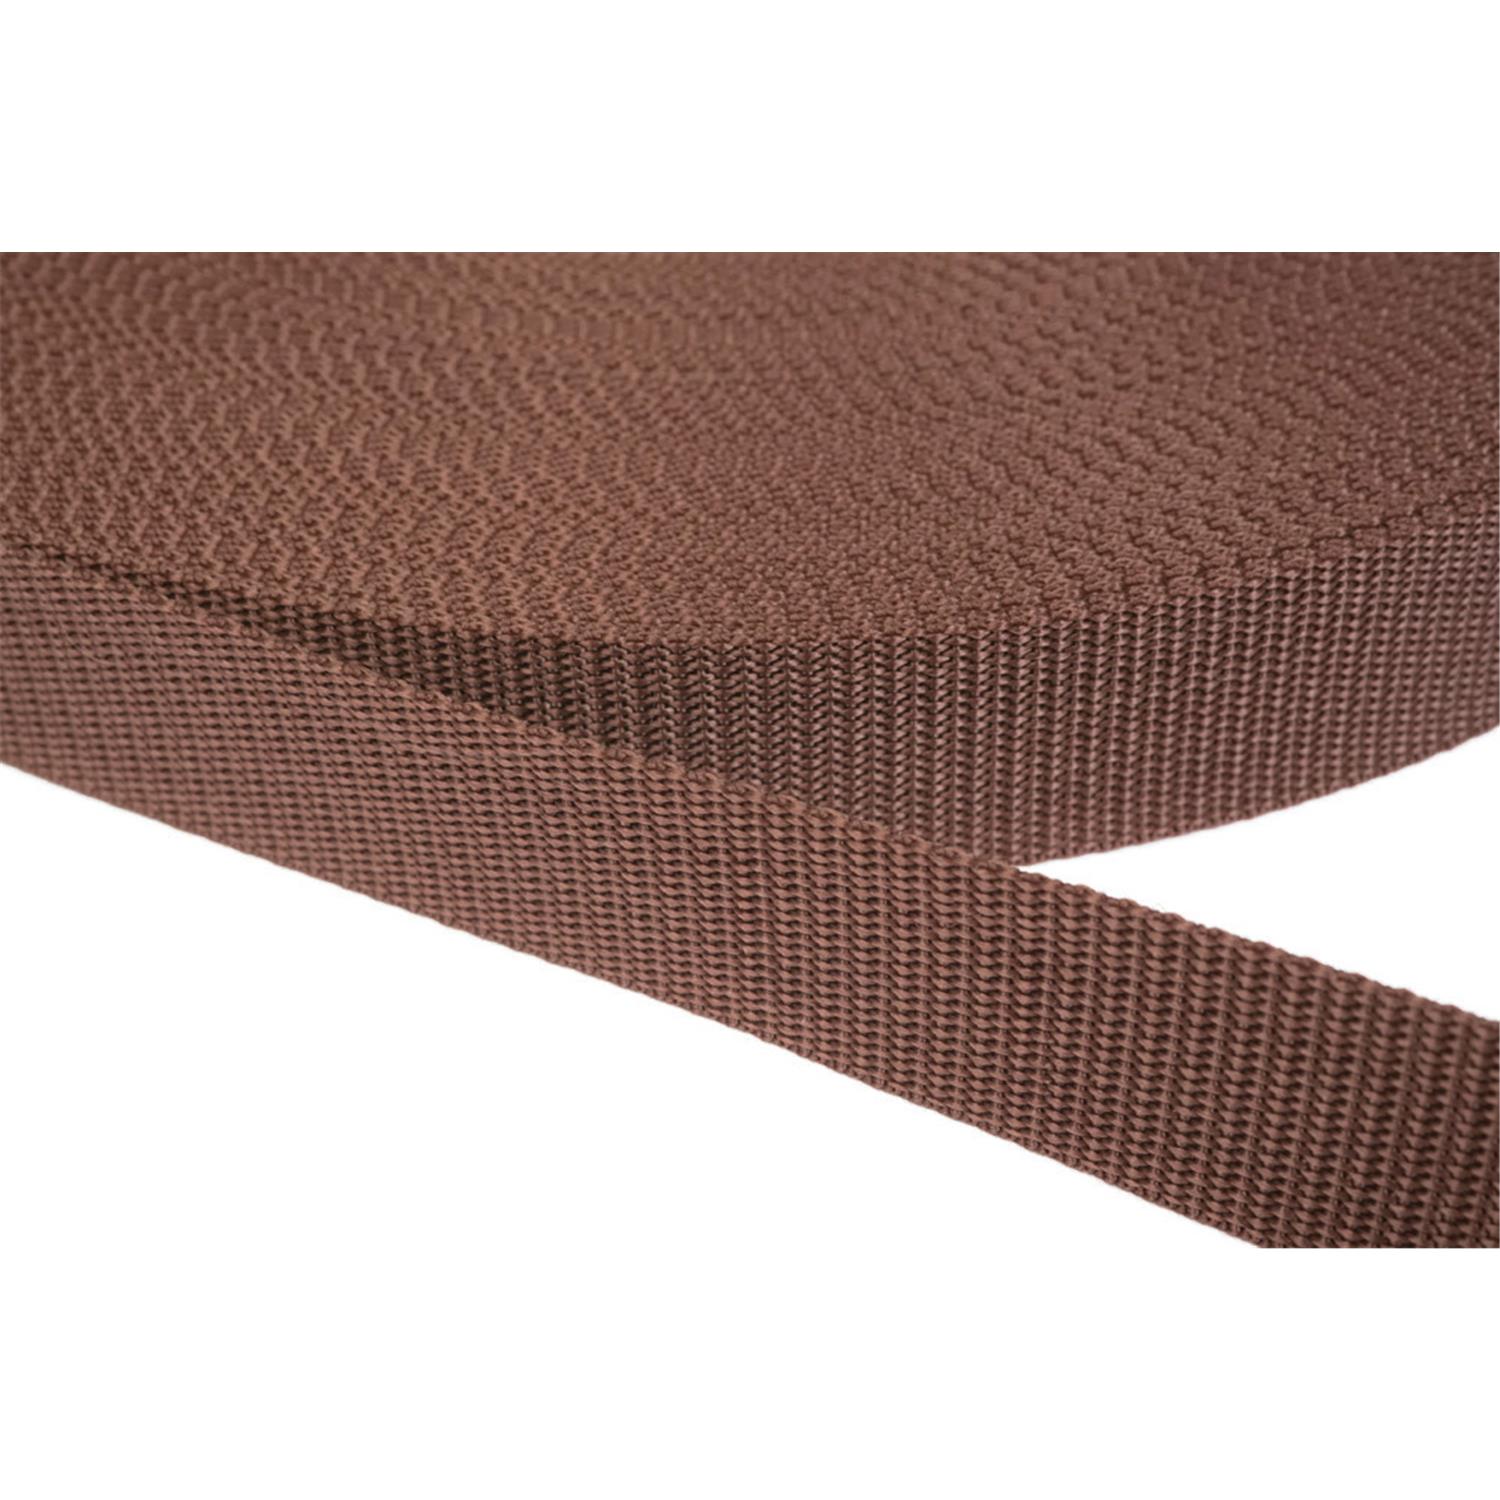 Gurtband 25mm breit aus Polypropylen in 41 Farben 07 - braun 12 Meter